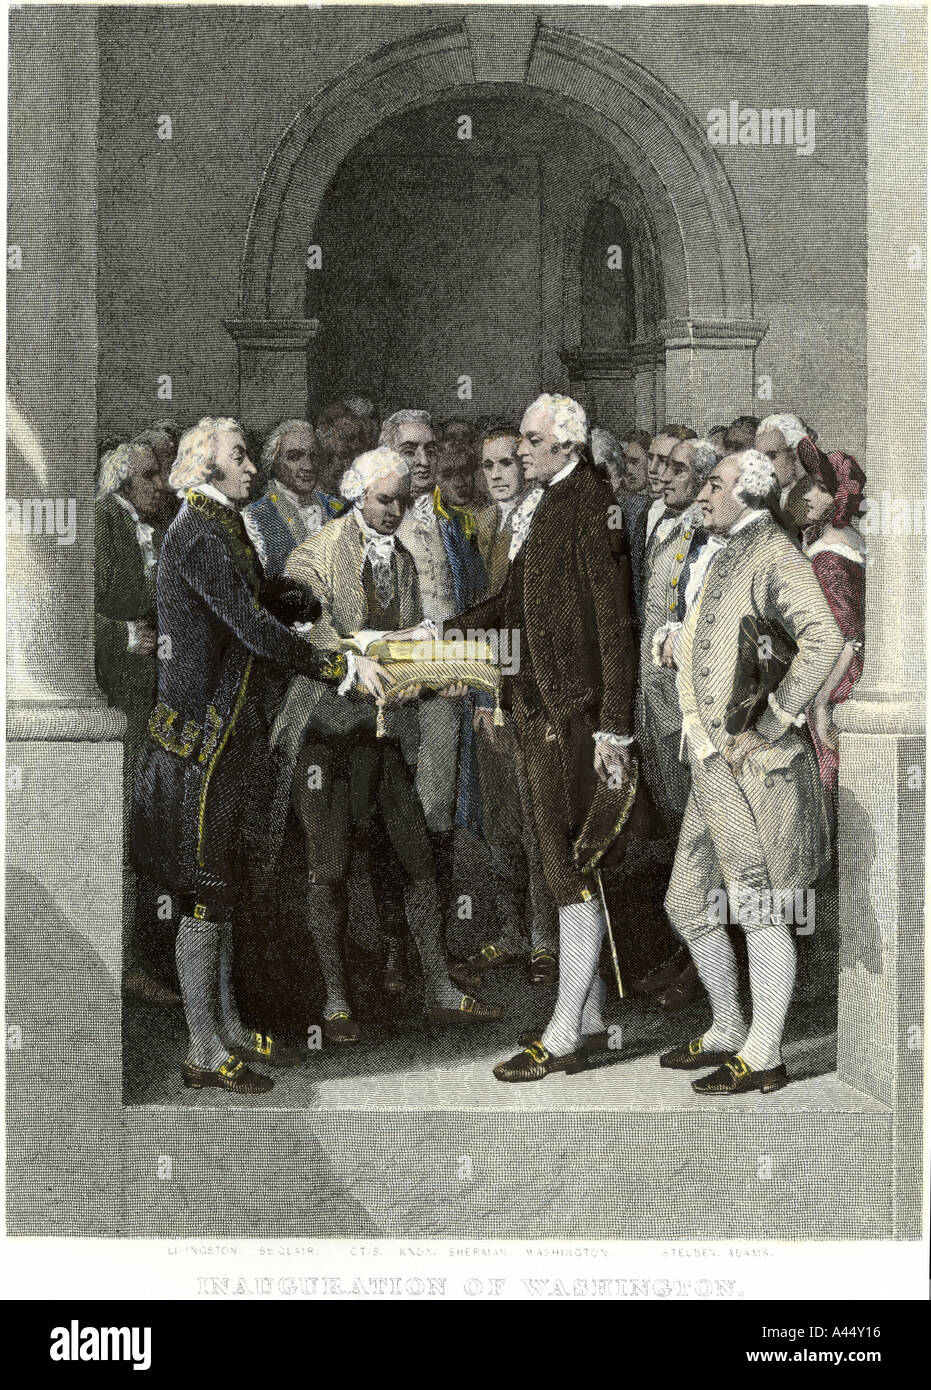 Inauguration du président George Washington à New York 1789. À la main, gravure sur acier Banque D'Images